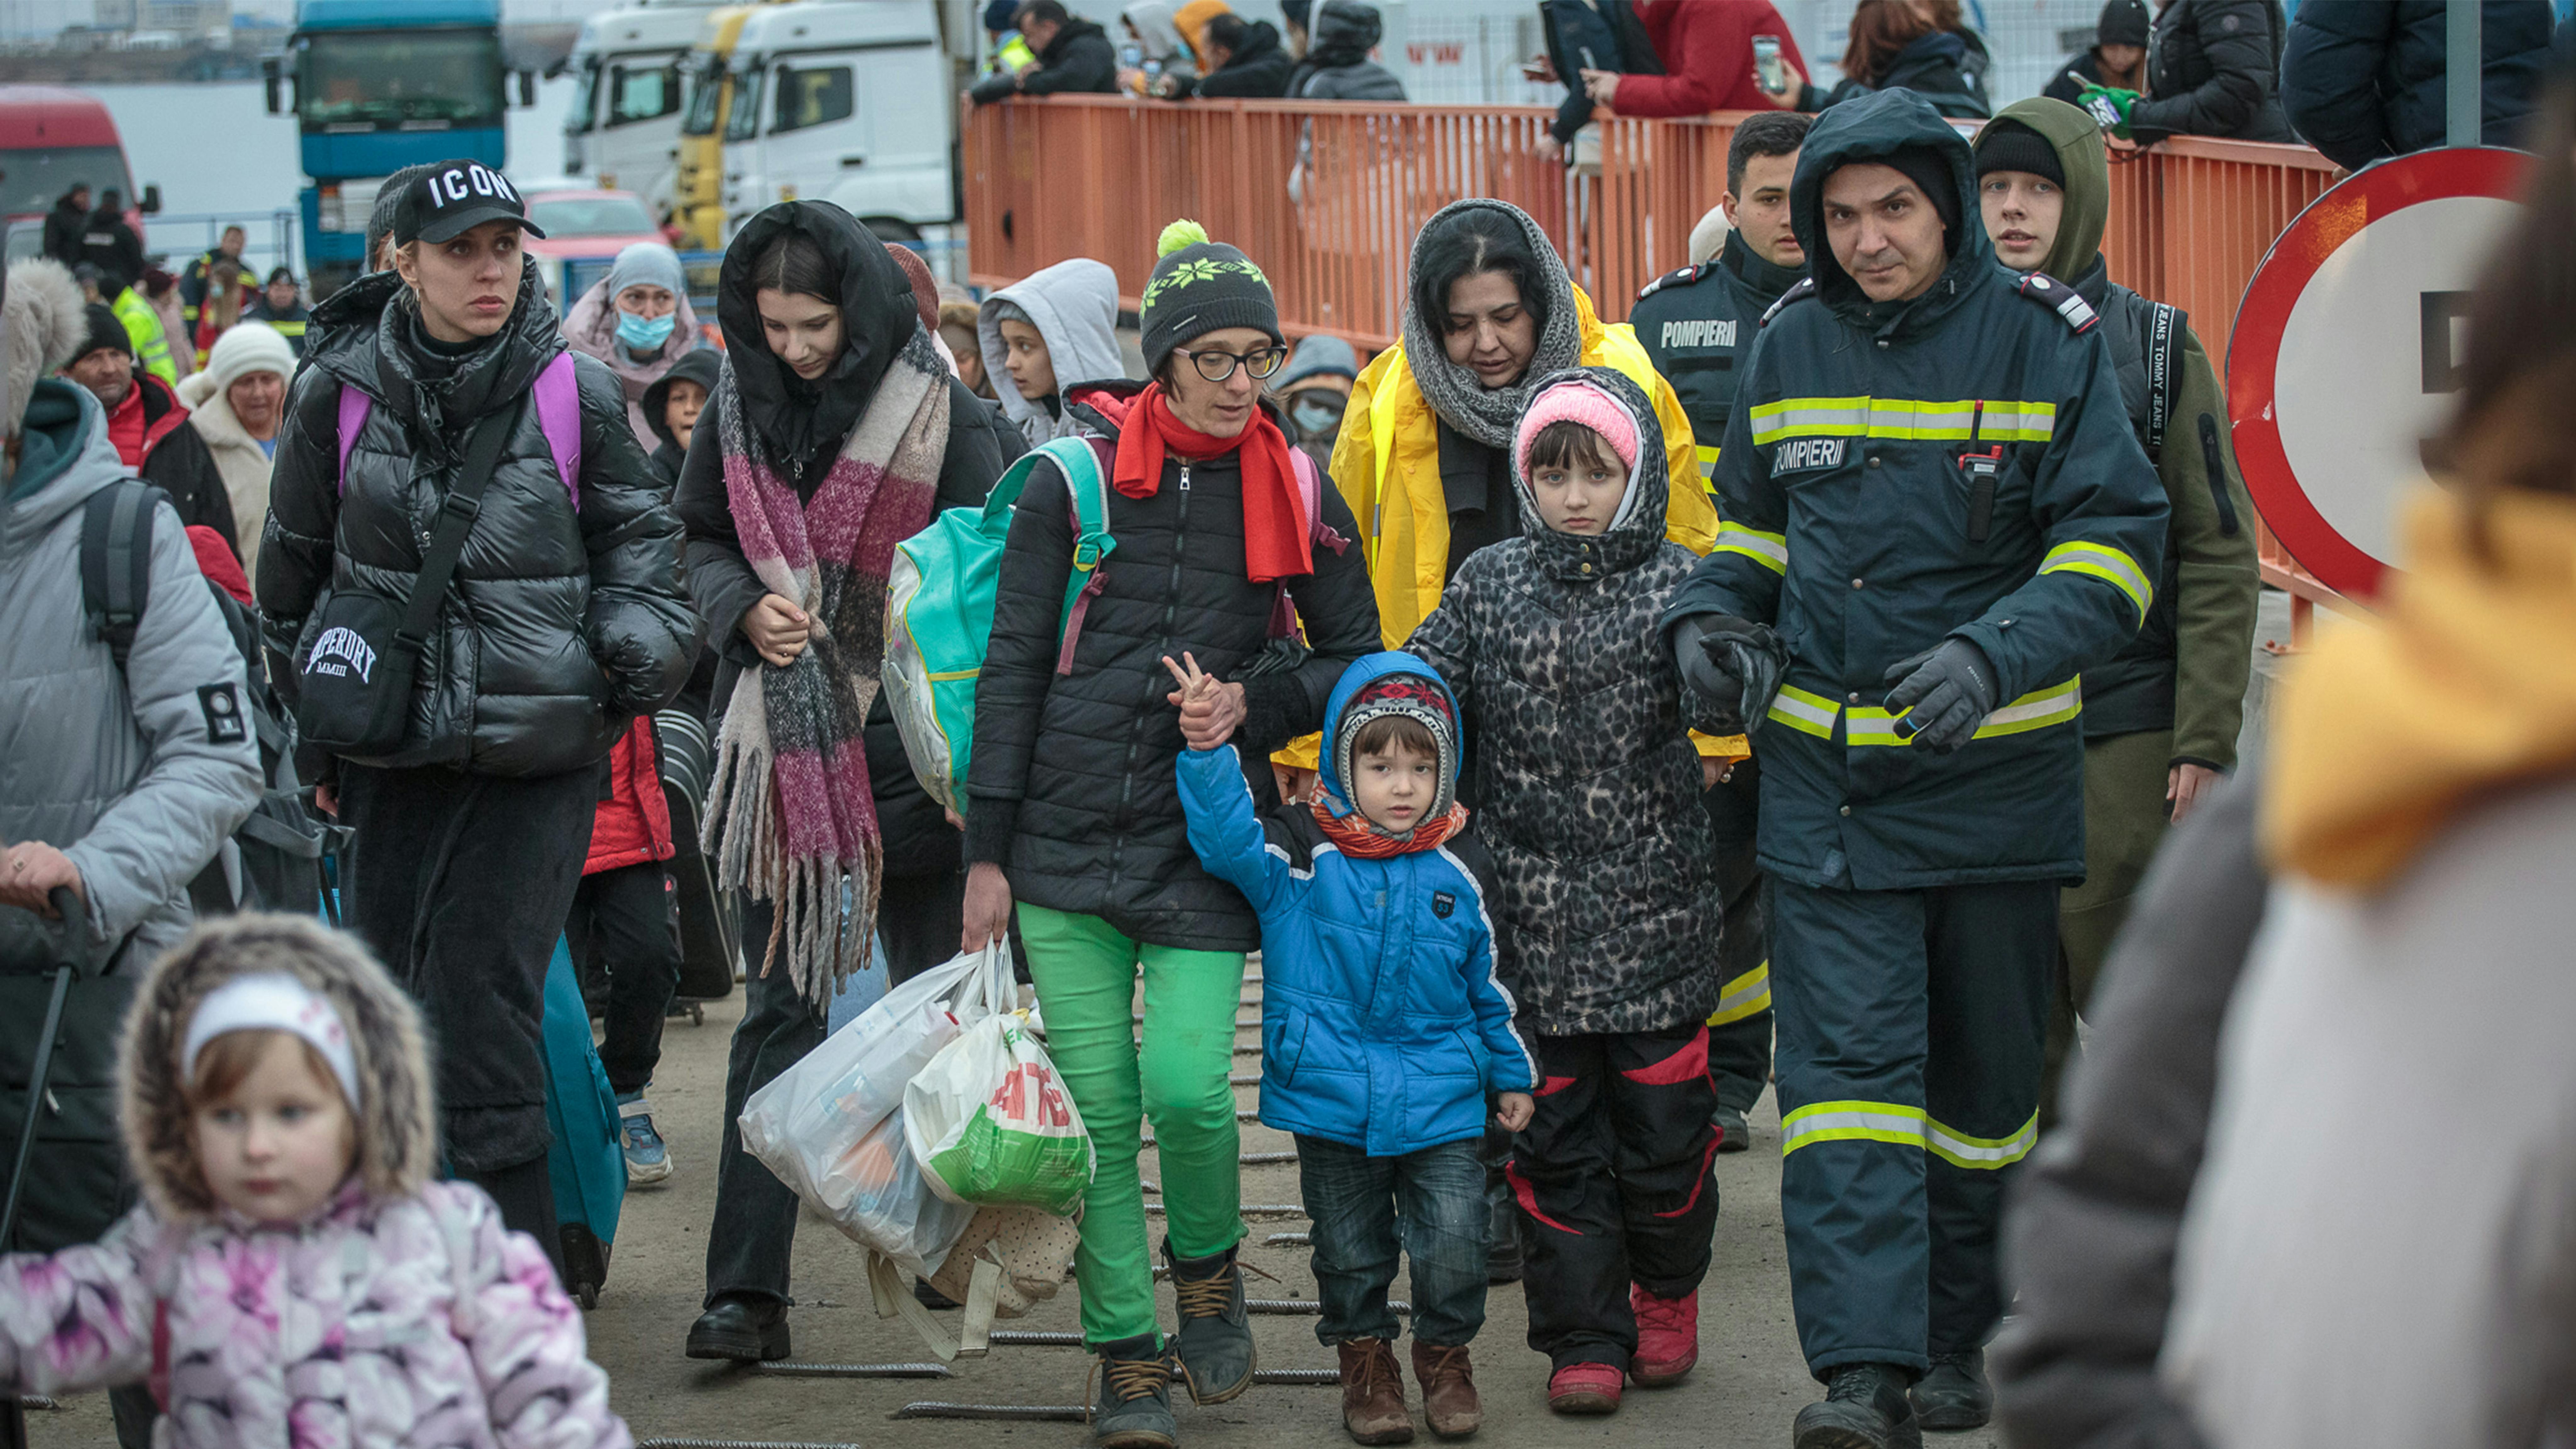 Romania, Il traghetto sta portando migliaia di rifugiati dall'Ucraina, ogni giorno, al valico di frontiera di Isaccea.